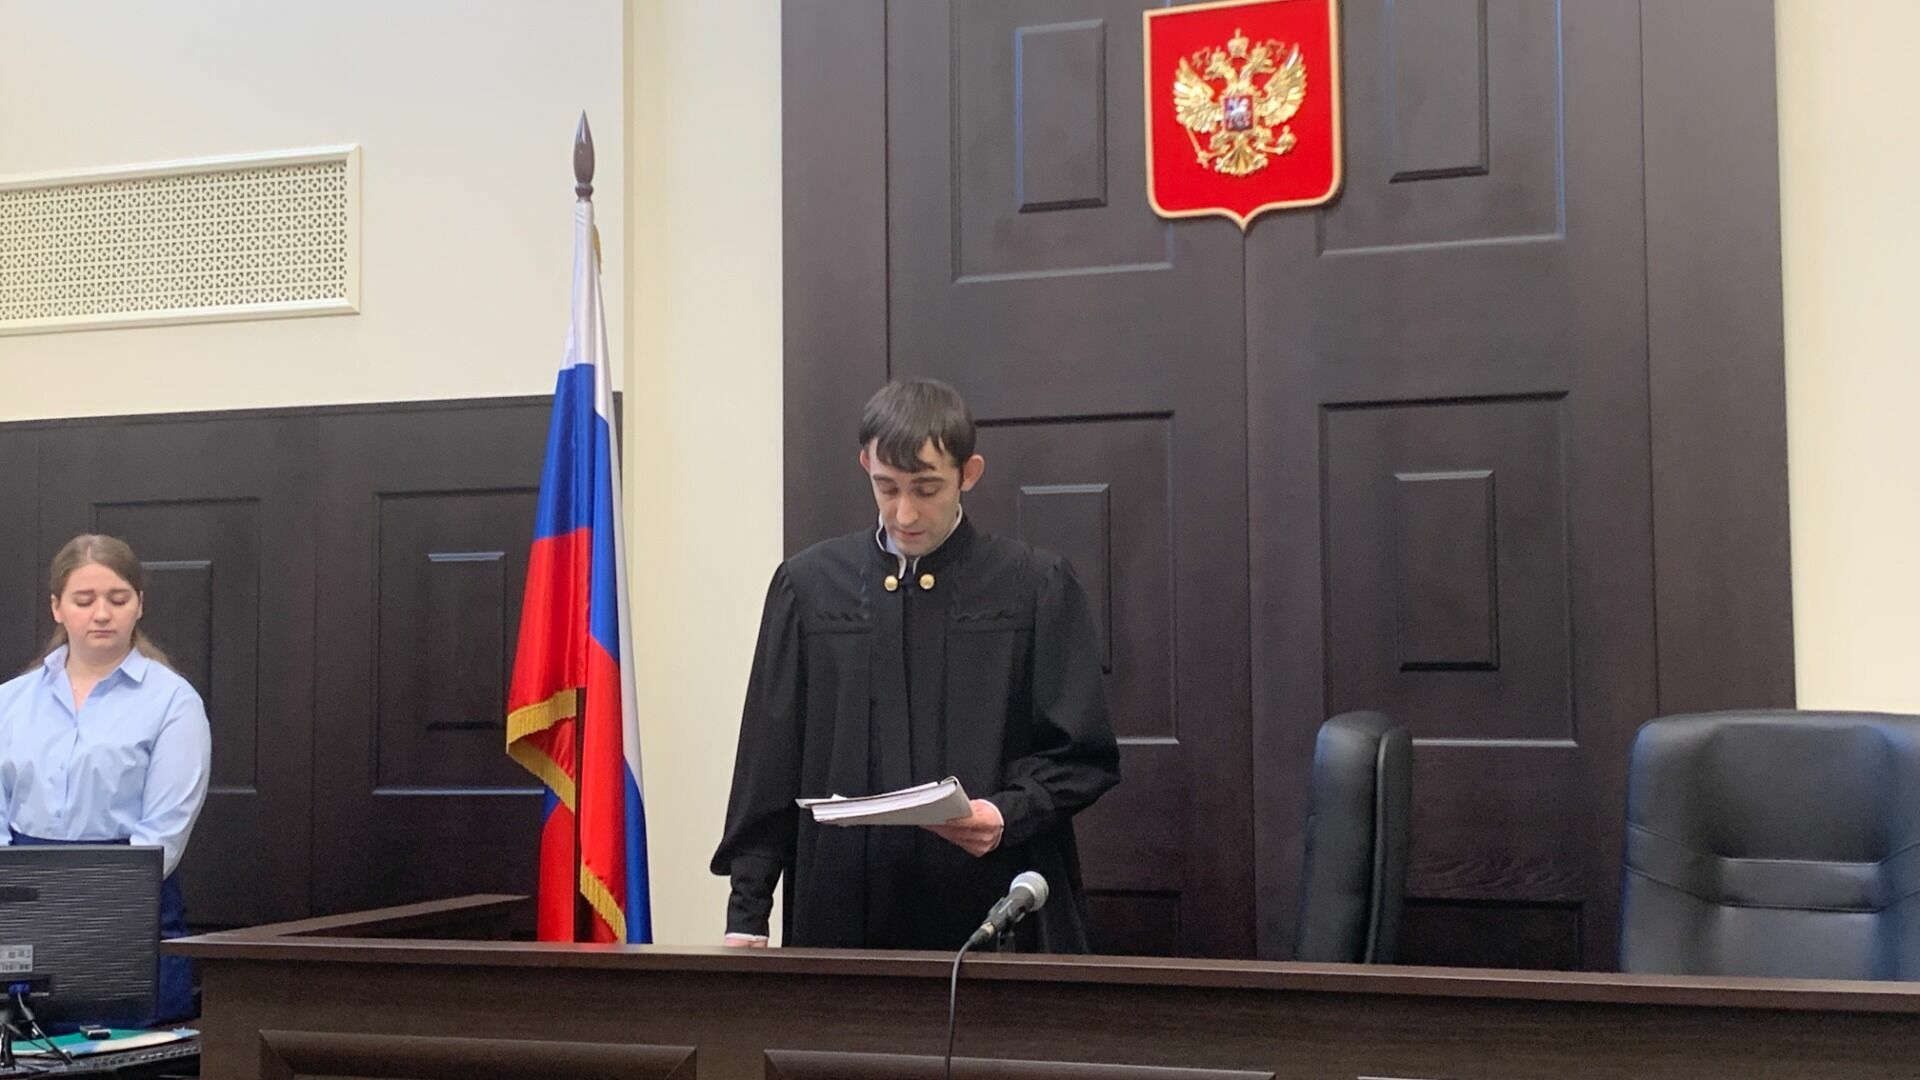 Не усматривает оскорблений: почему суд Белгорода отклонил иск Маслова к Бабину